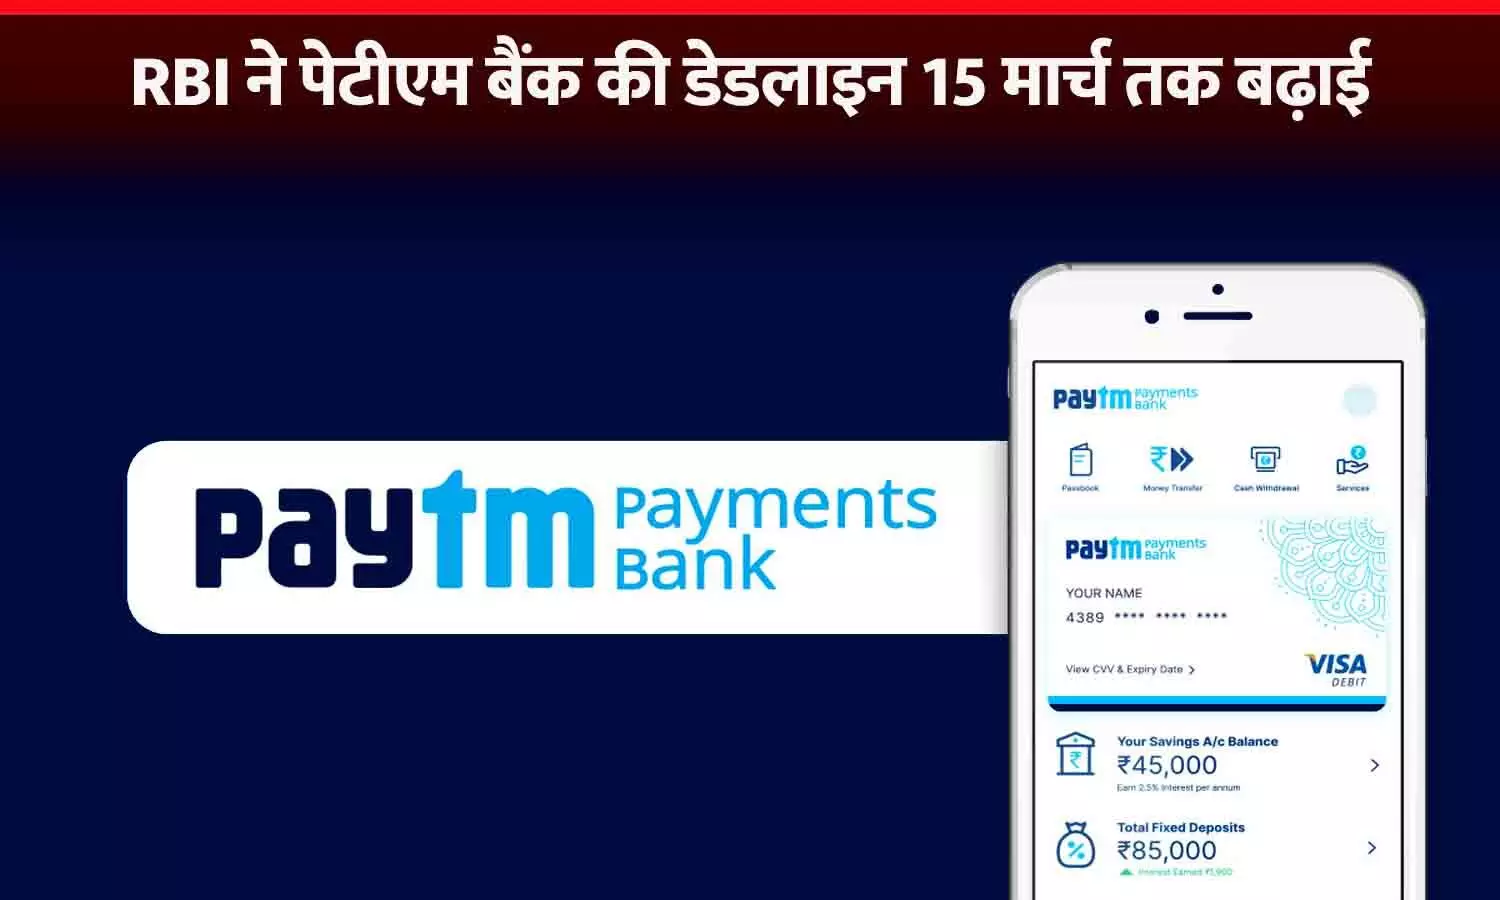 Paytm Bank की डेडलाइन बढ़ी: RBI ने 15 मार्च तक की मोहलत दी, इसके बाद पैसे डिपॉजिट नहीं कर सकेंगे; वॉलेट और फास्टैग भी नहीं चलेगा